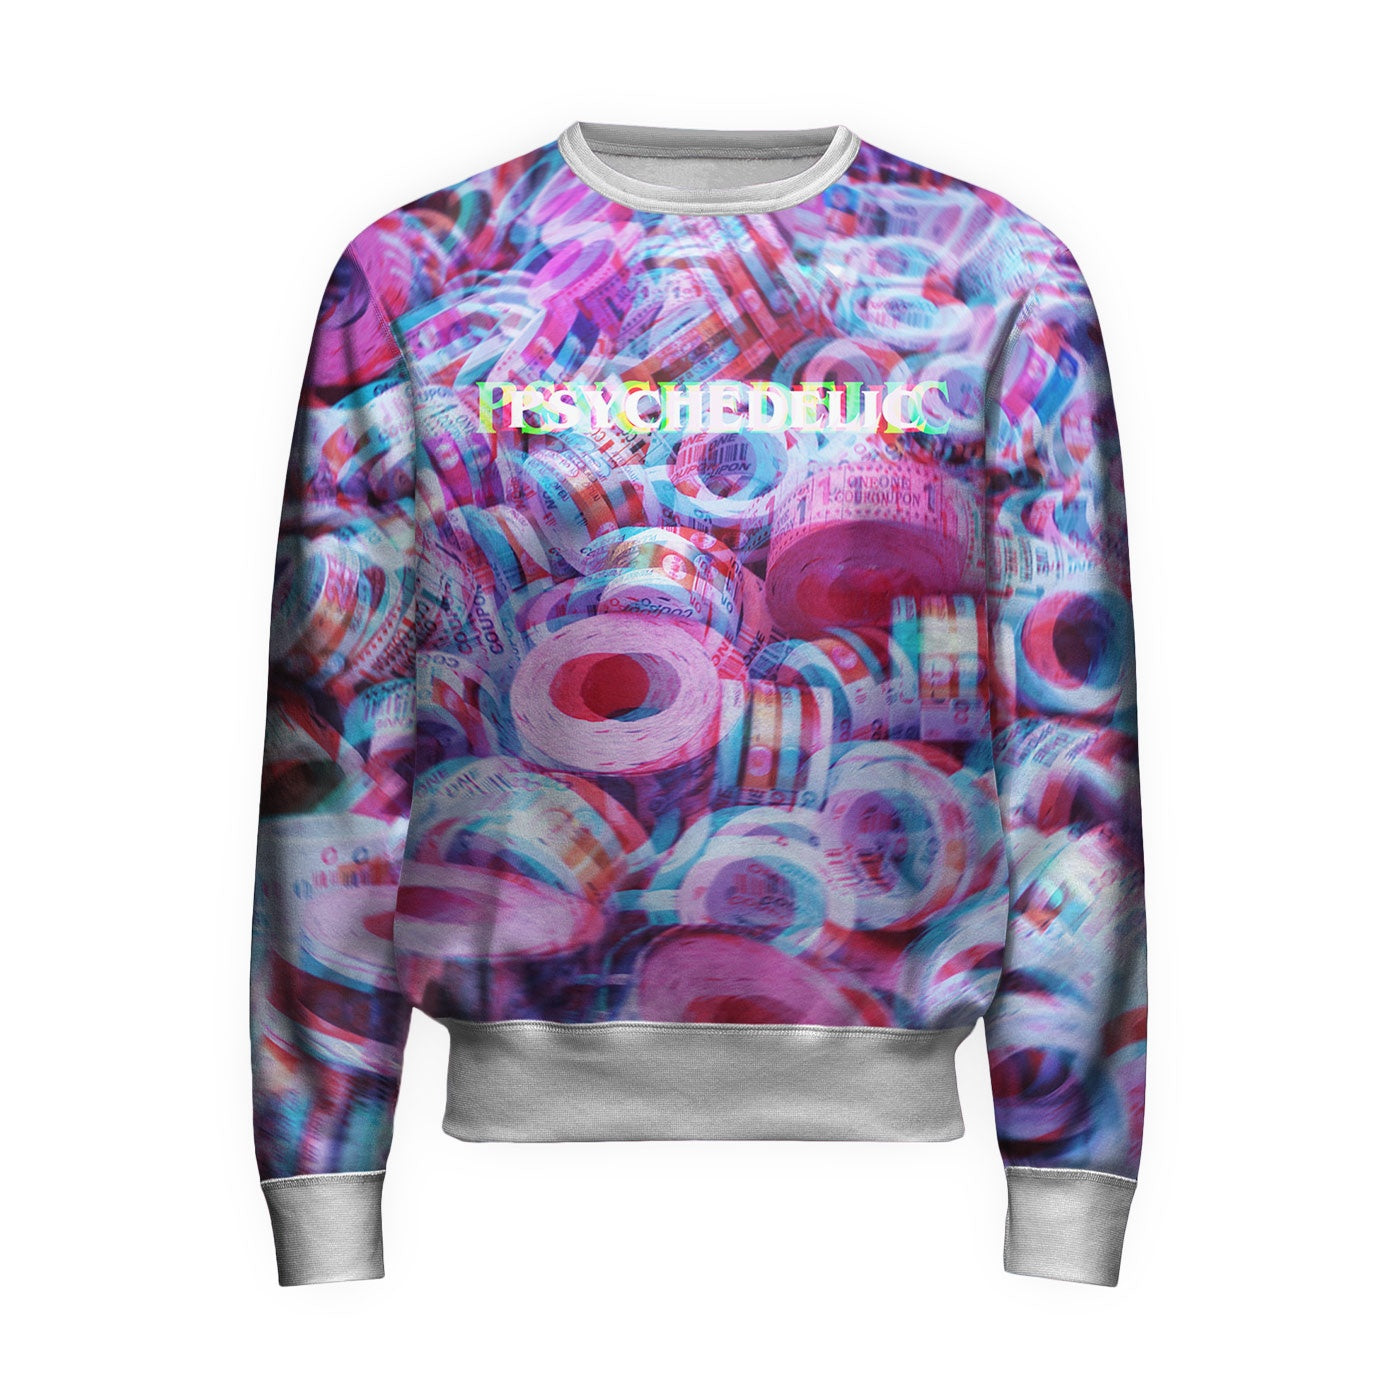 Psychedelic Embroidered Sweatshirt